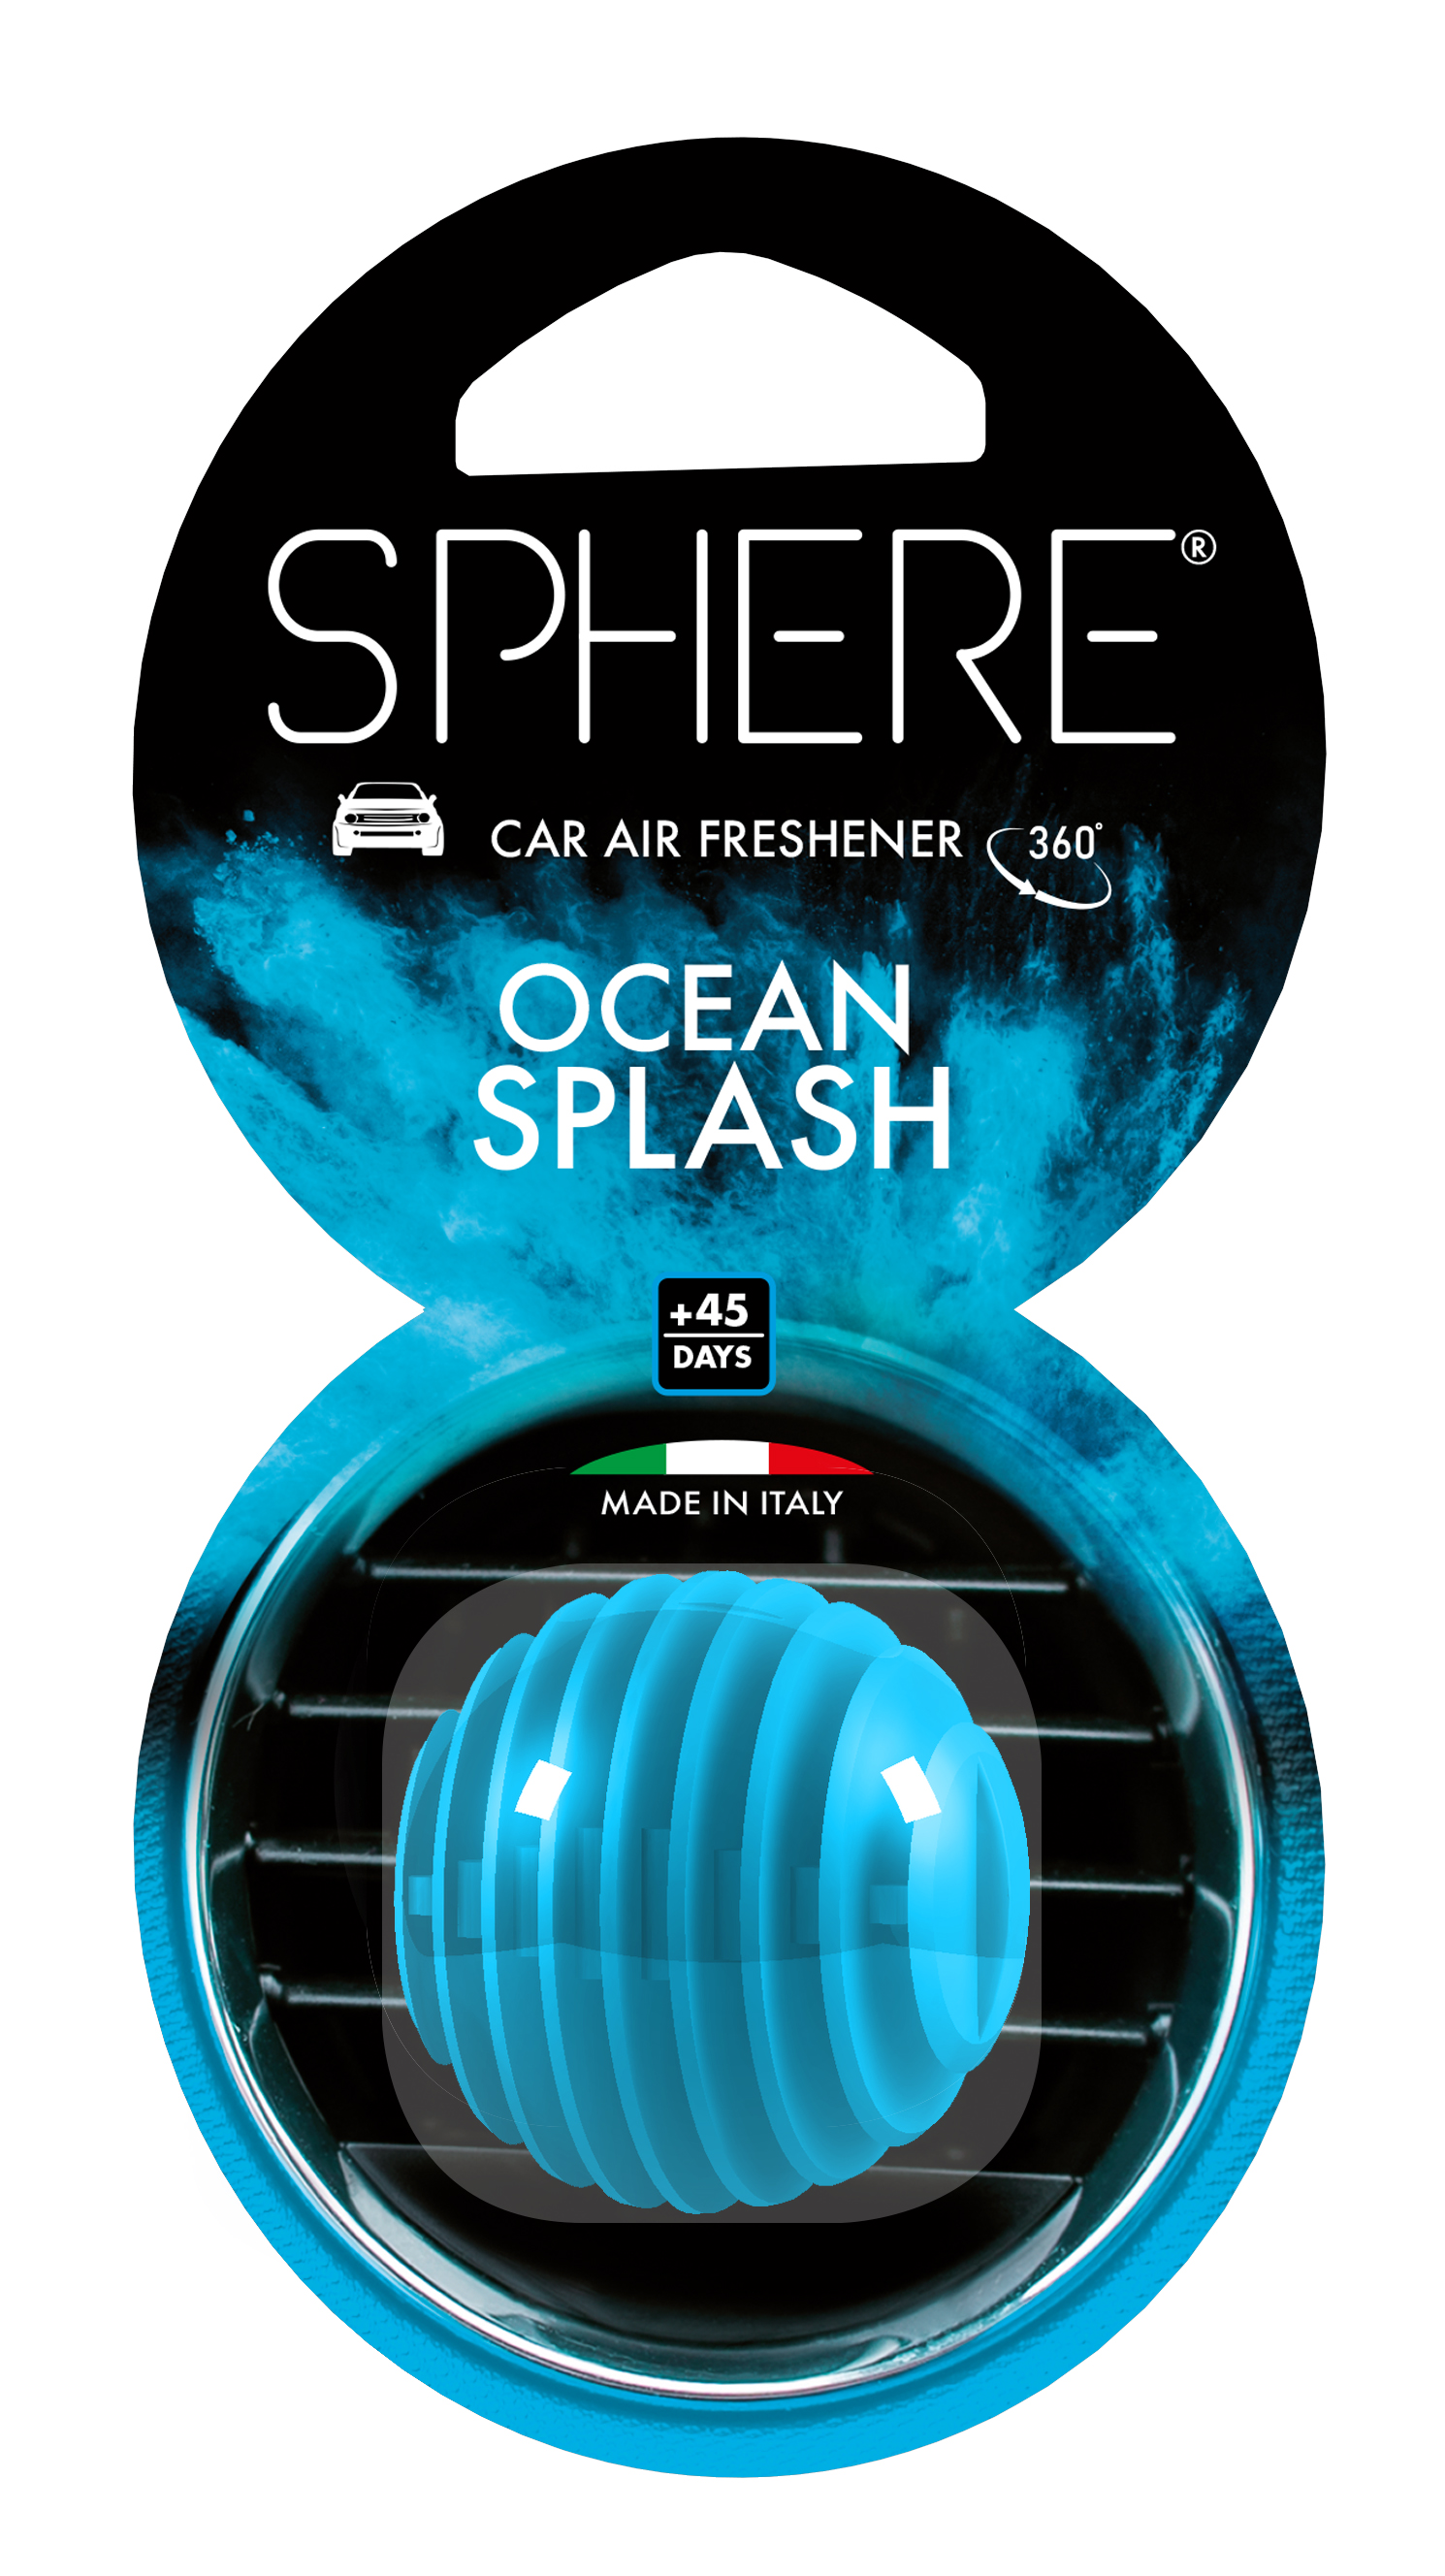 Sphere Ocean Splash